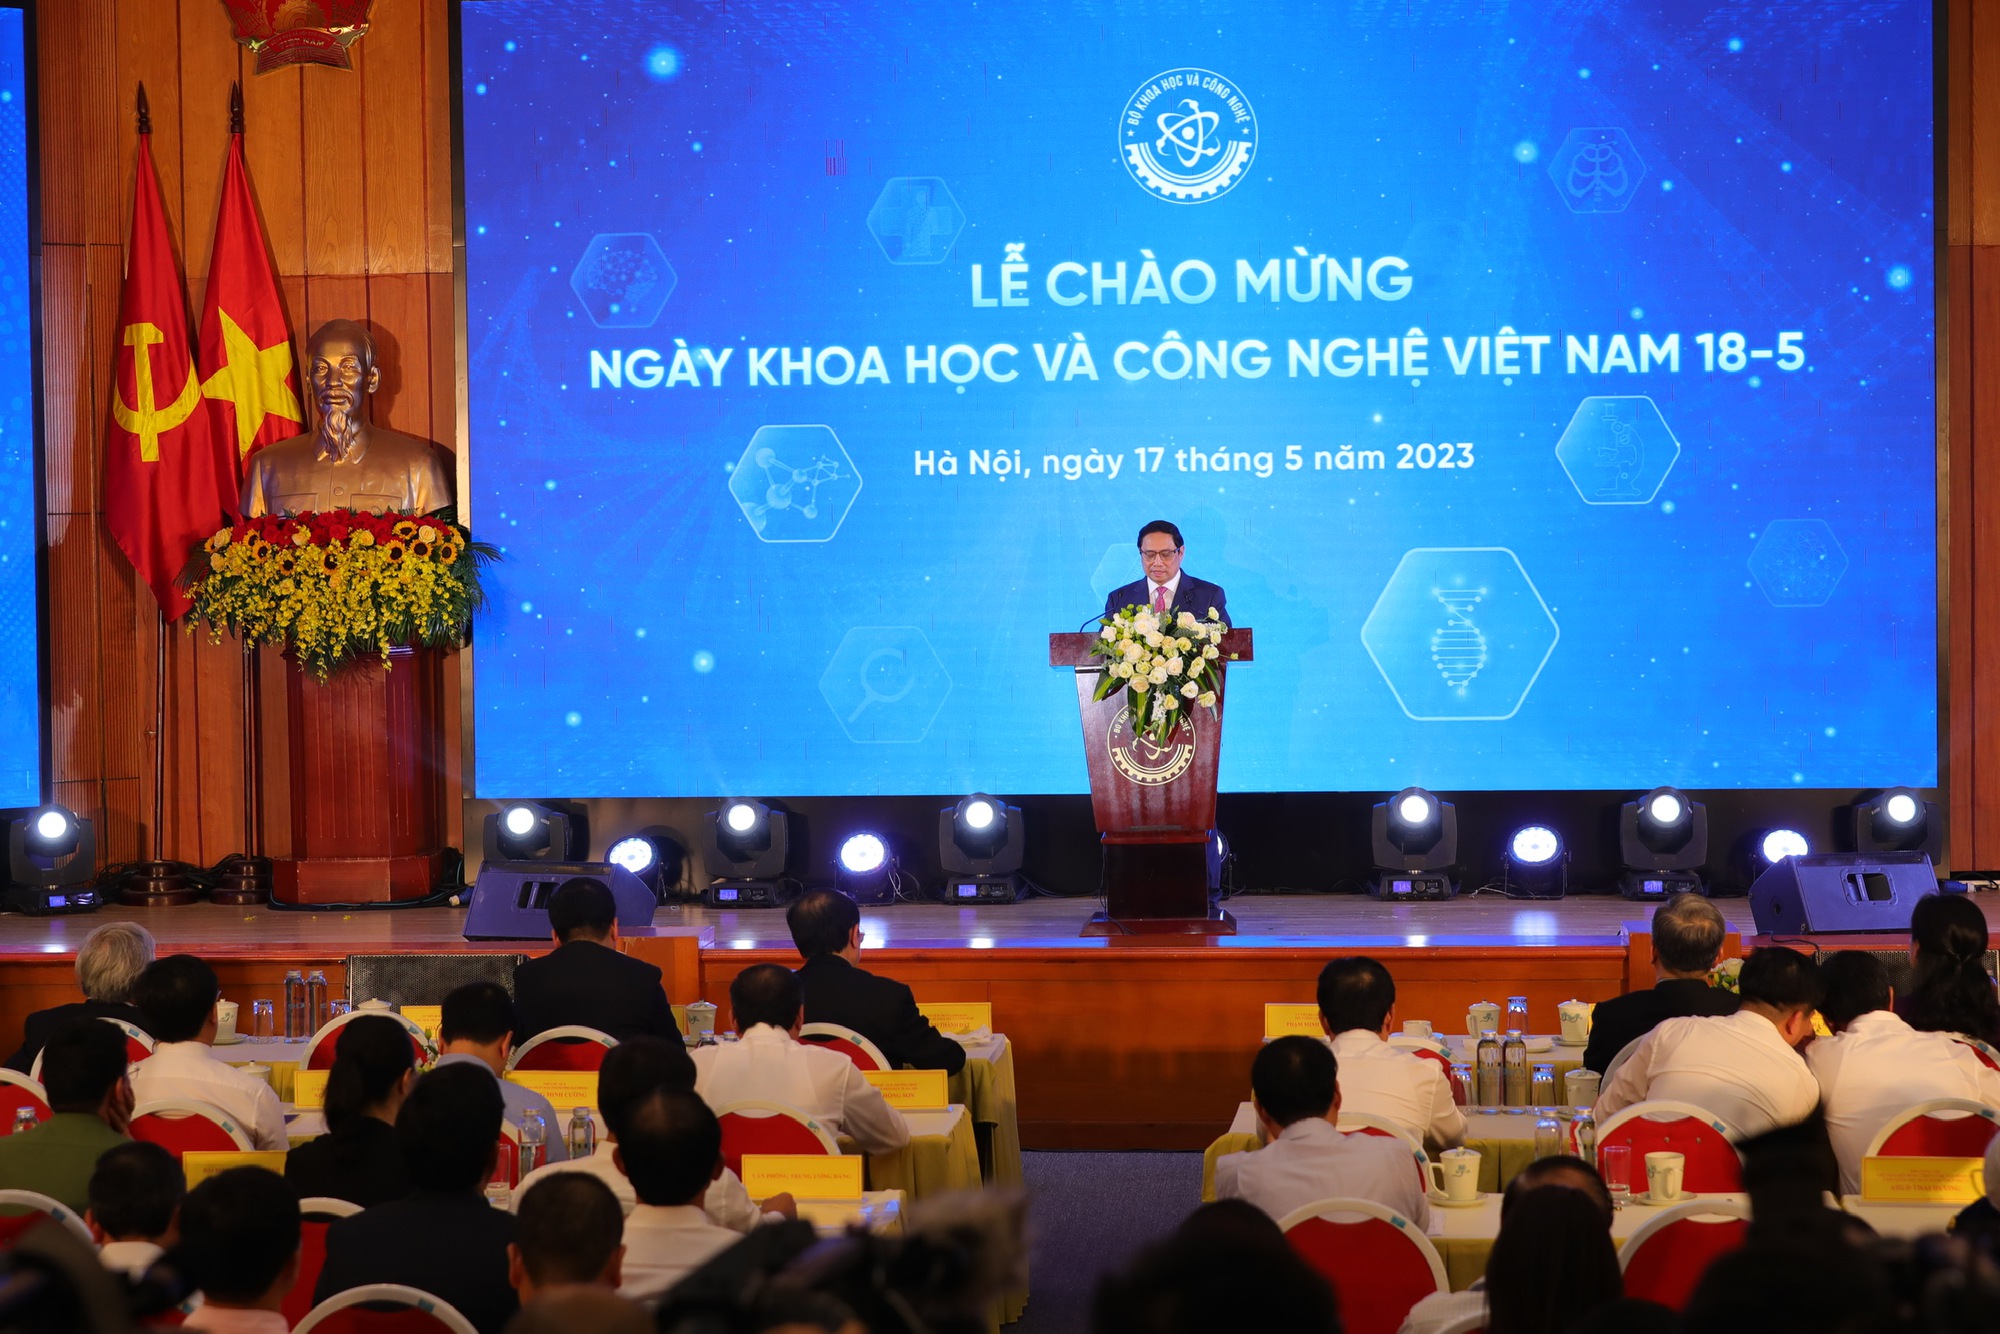 Chào mừng 60 năm ngày khoa học và công nghệ Việt Nam  - Ảnh 3.